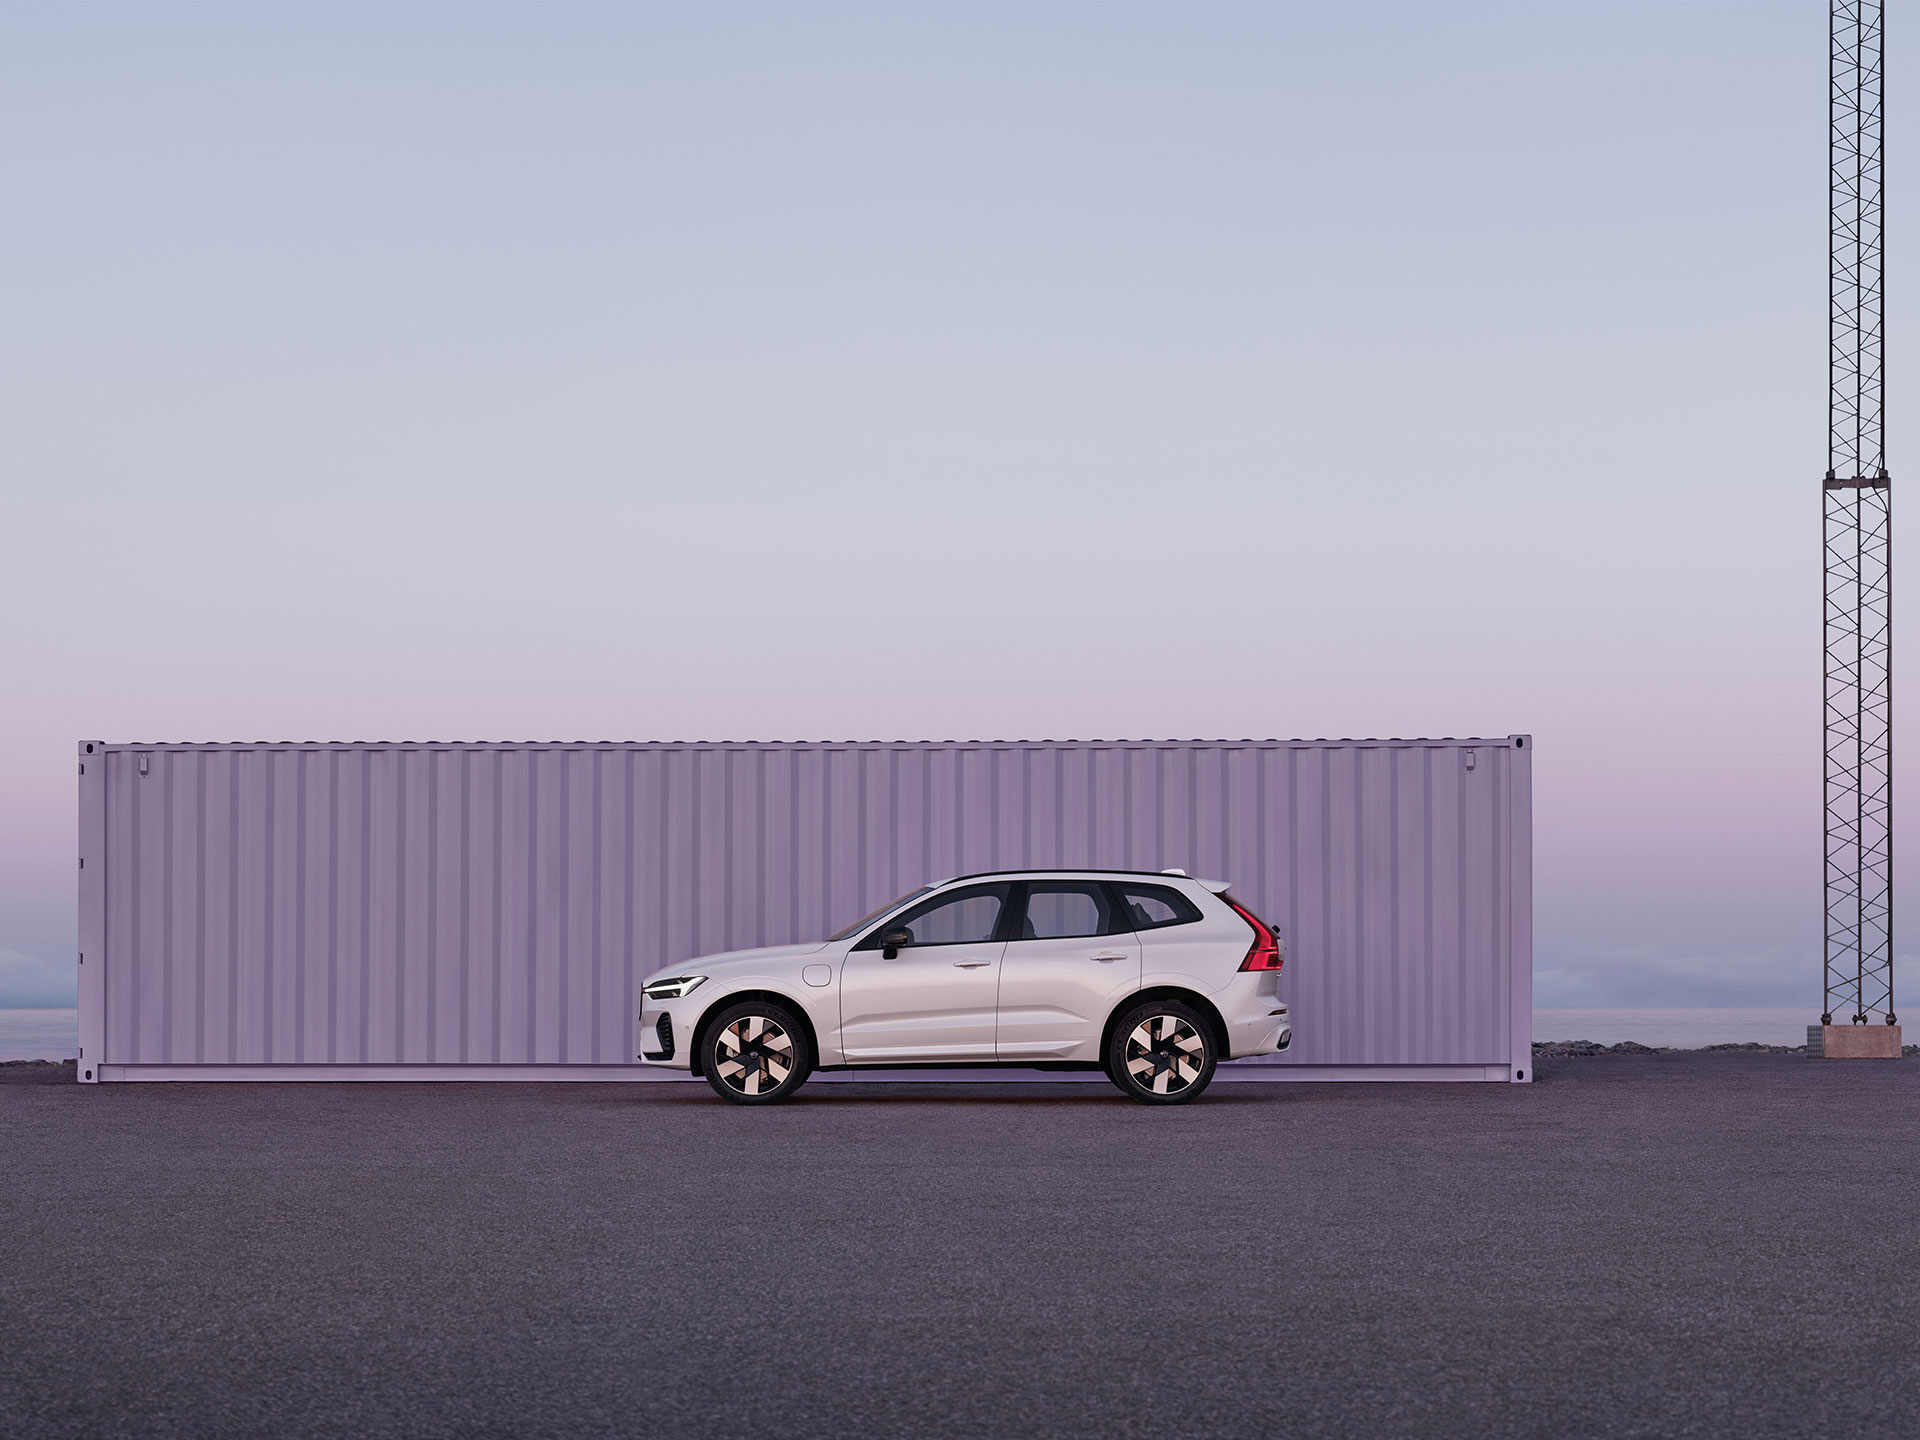 Volvo XC60 zaparkované v minimalistickém průmyslovém prostředí ve fialovém a růžovém světle vycházejícího slunce.